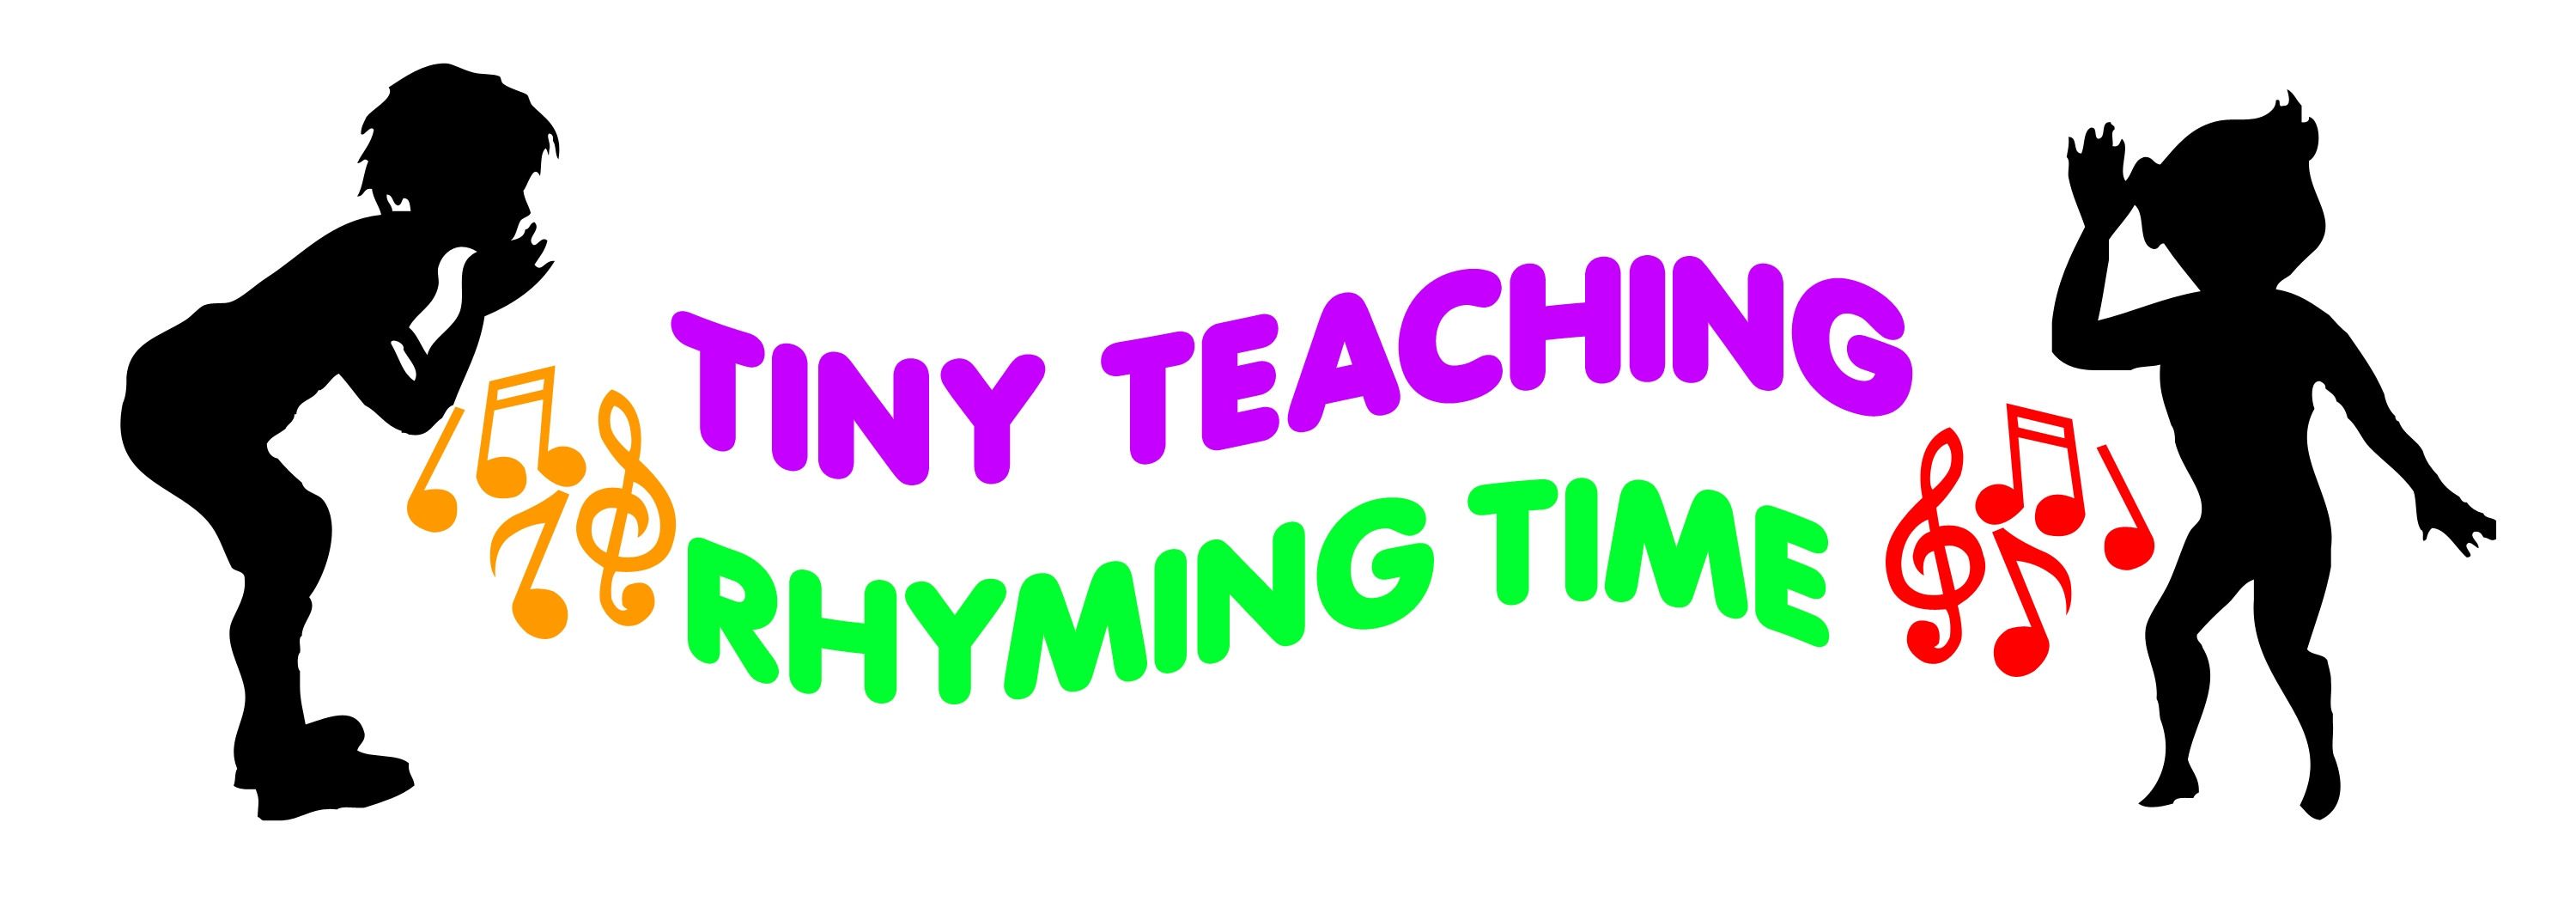 tiny-teaching-rhyming-time-logo